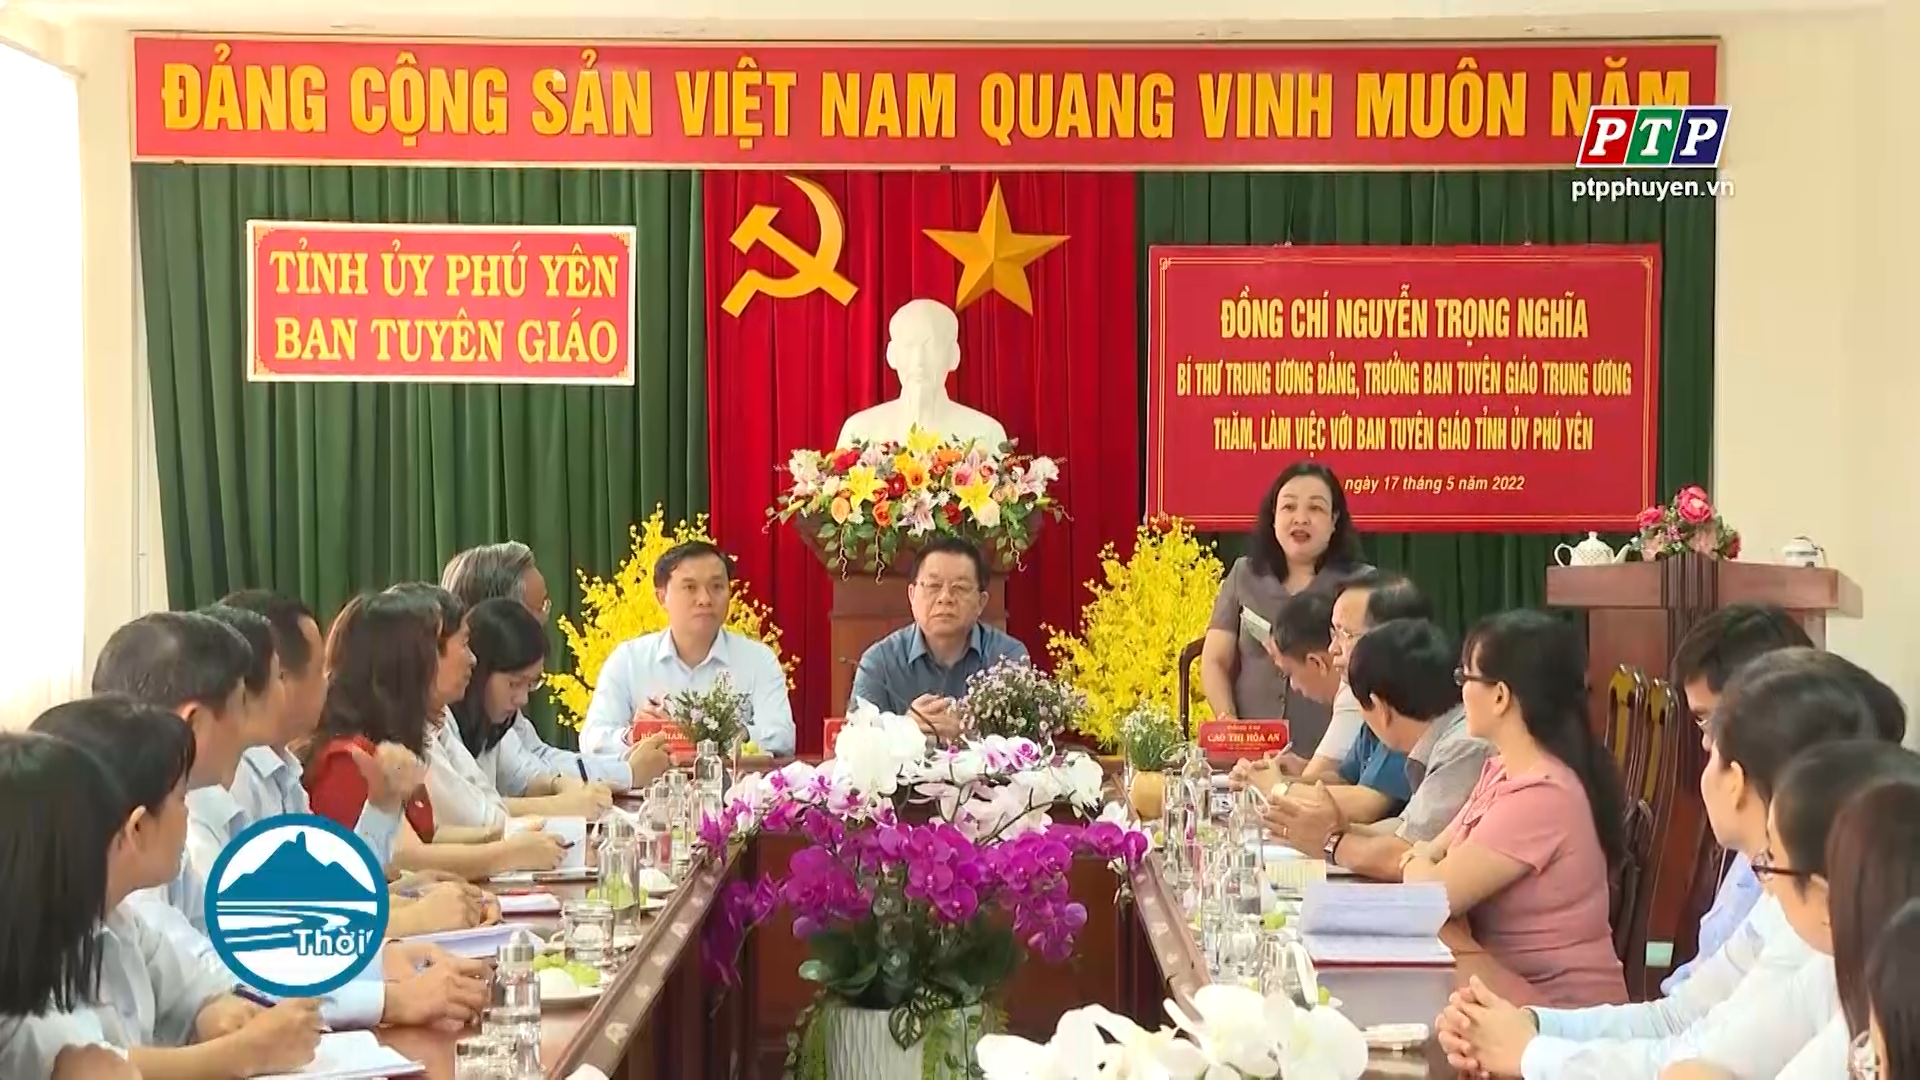 Đồng chí Nguyễn Trọng Nghĩa làm việc với Ban Tuyên giáo Tỉnh ủy Phú Yên